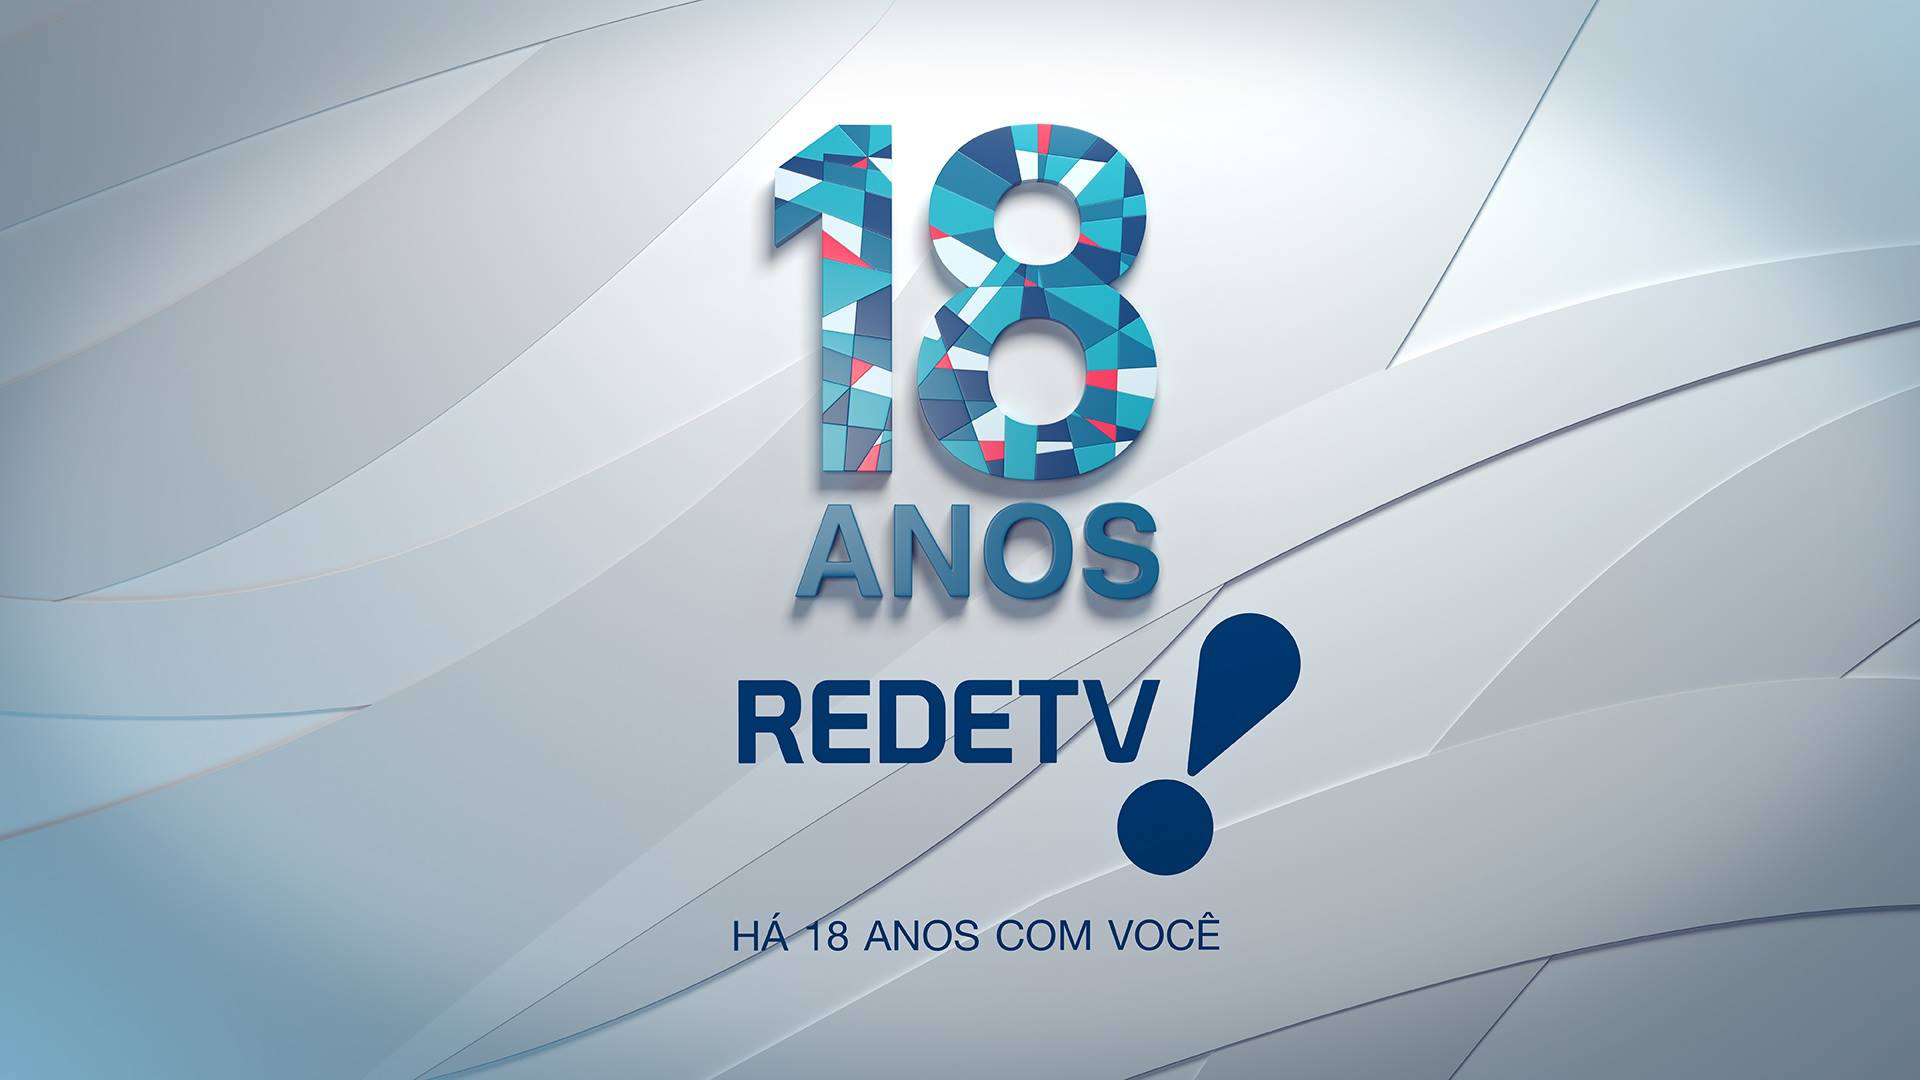 RedeTV! quer lançar três novos programas no início de 2018